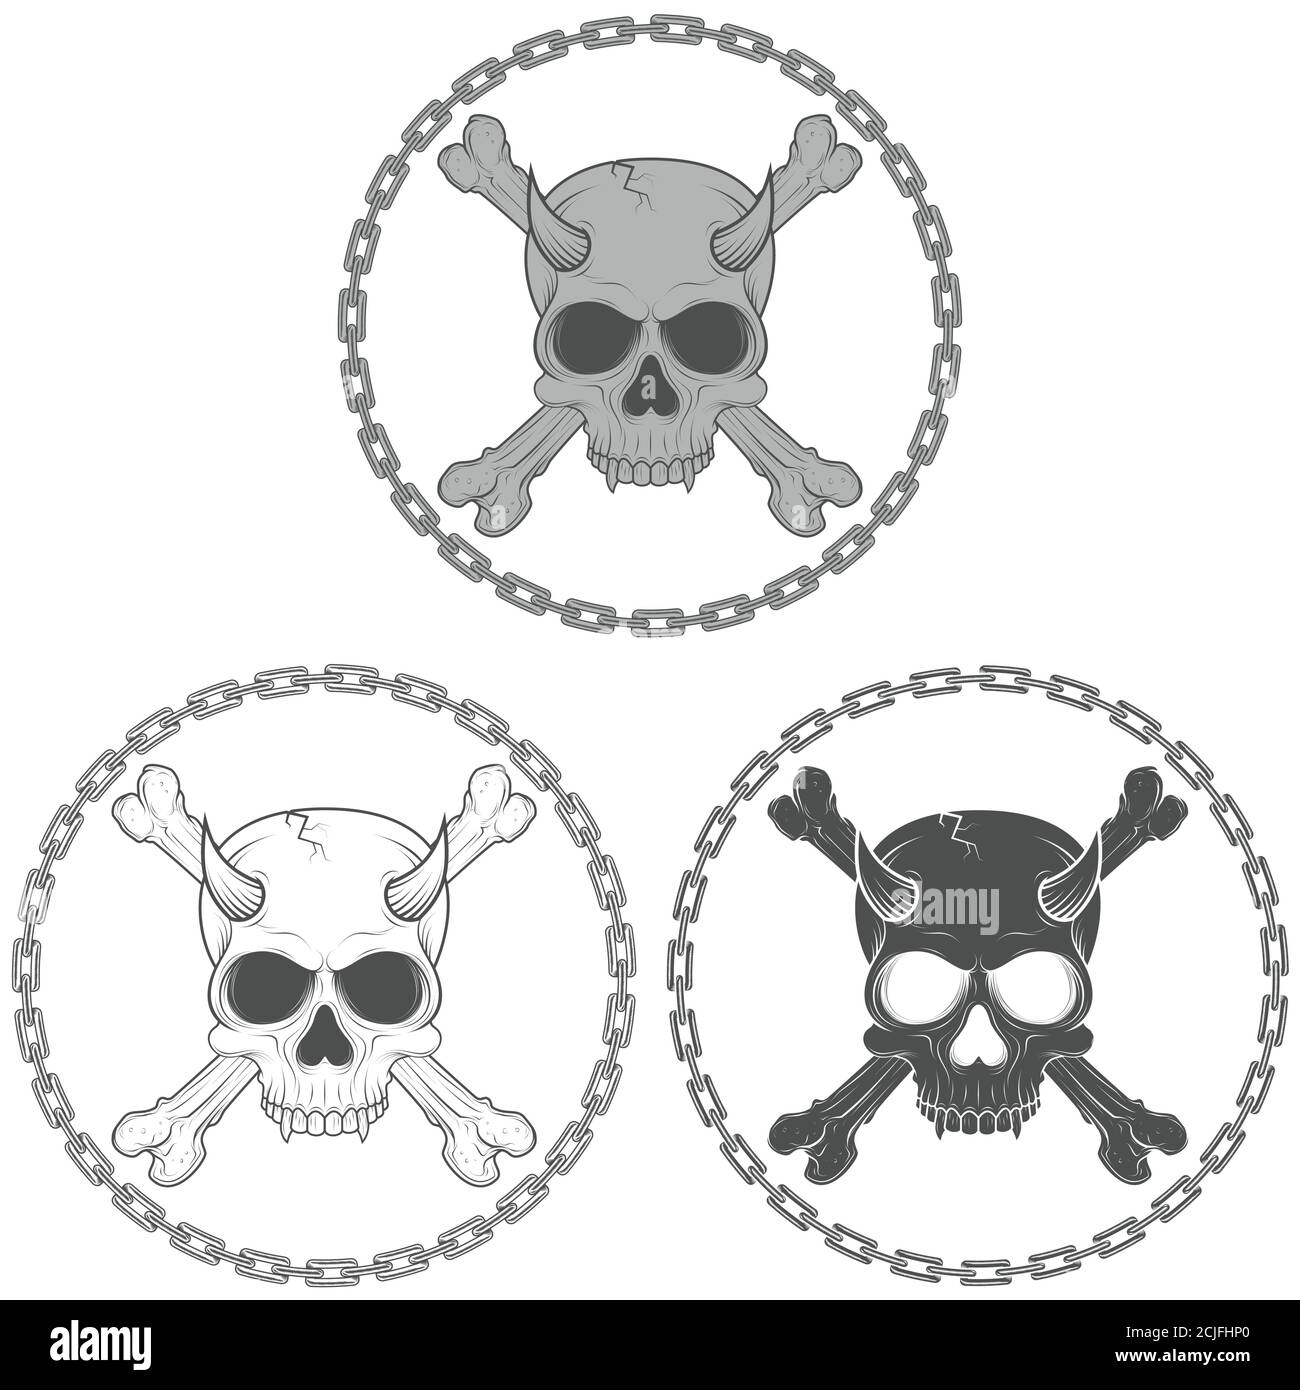 Dämonisches Totenkopf-Vektor-Design mit Knochen, umgeben von Ketten, in schwarz und weiß. Stock Vektor